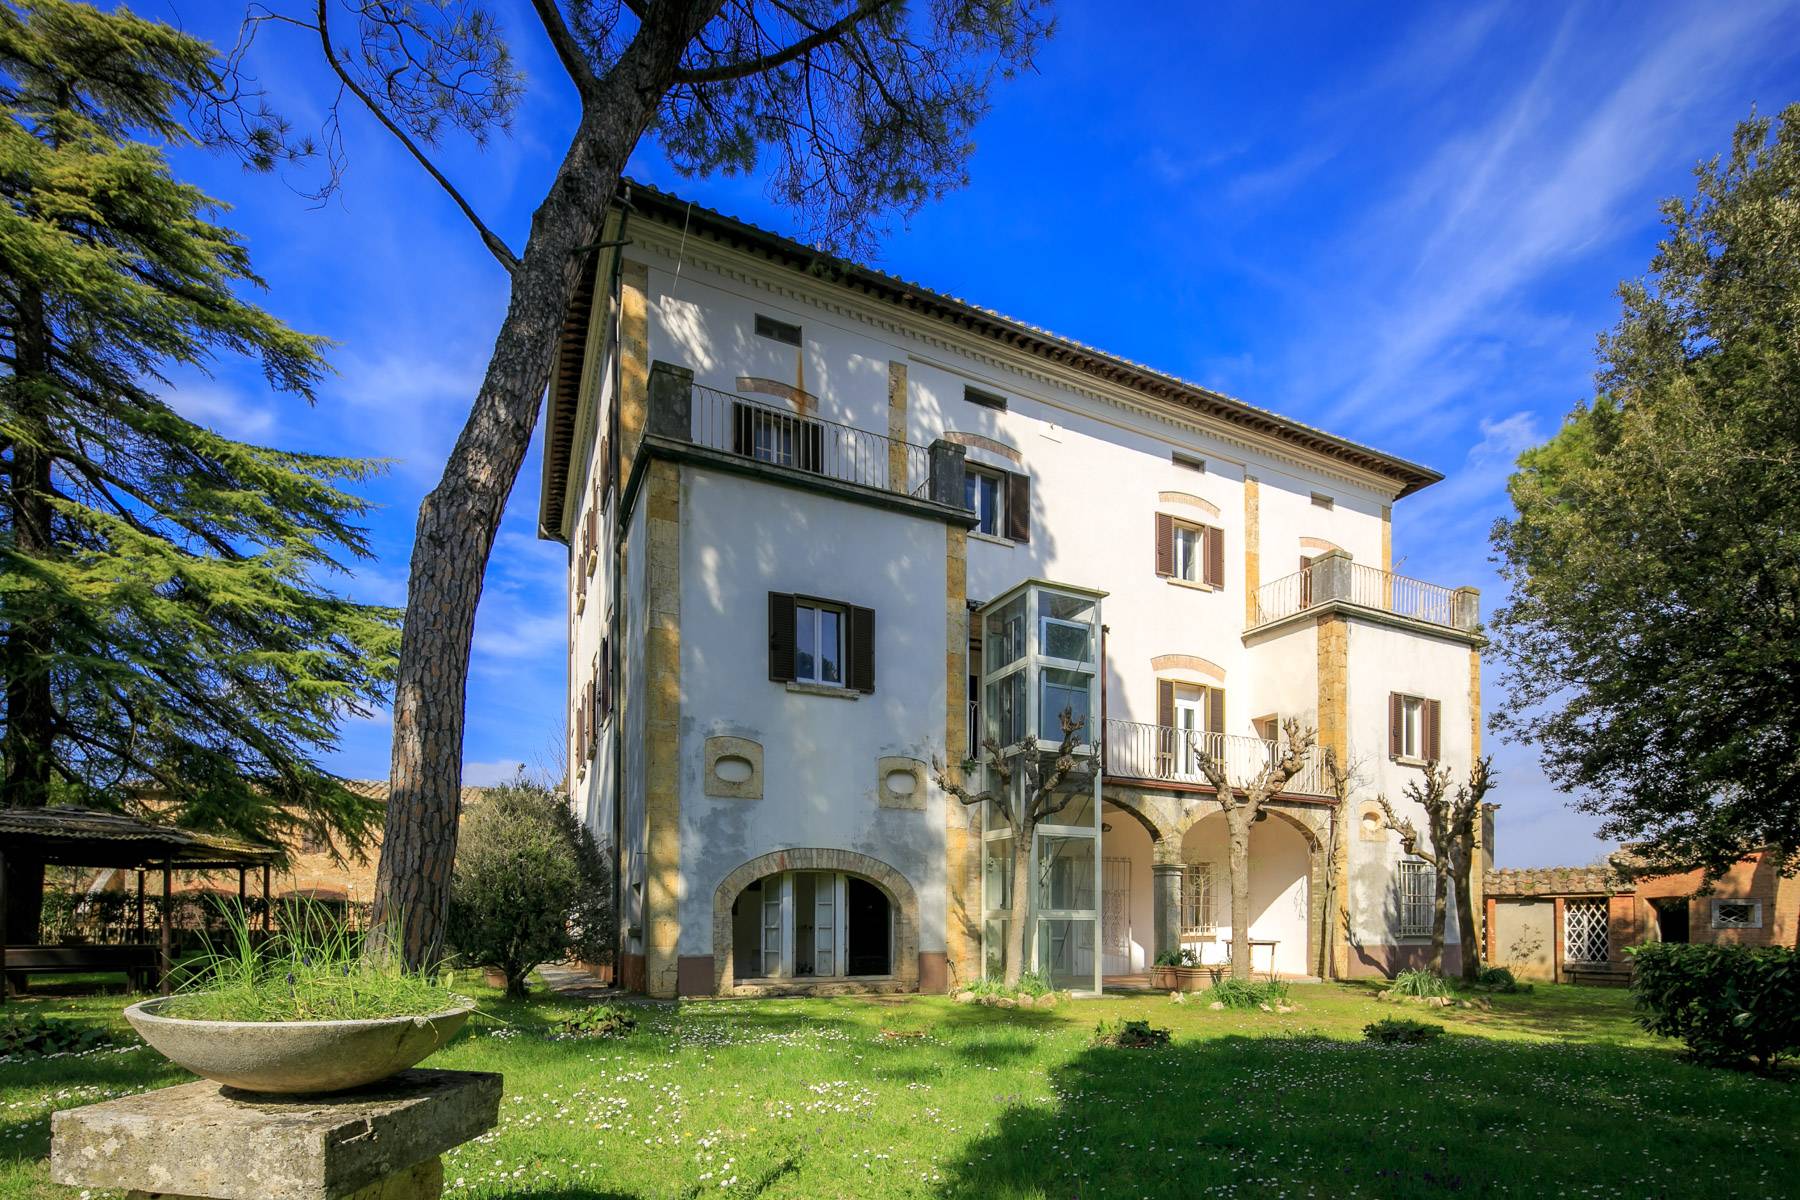 Villa in Vendita a Montepulciano: 5 locali, 2400 mq - Foto 29